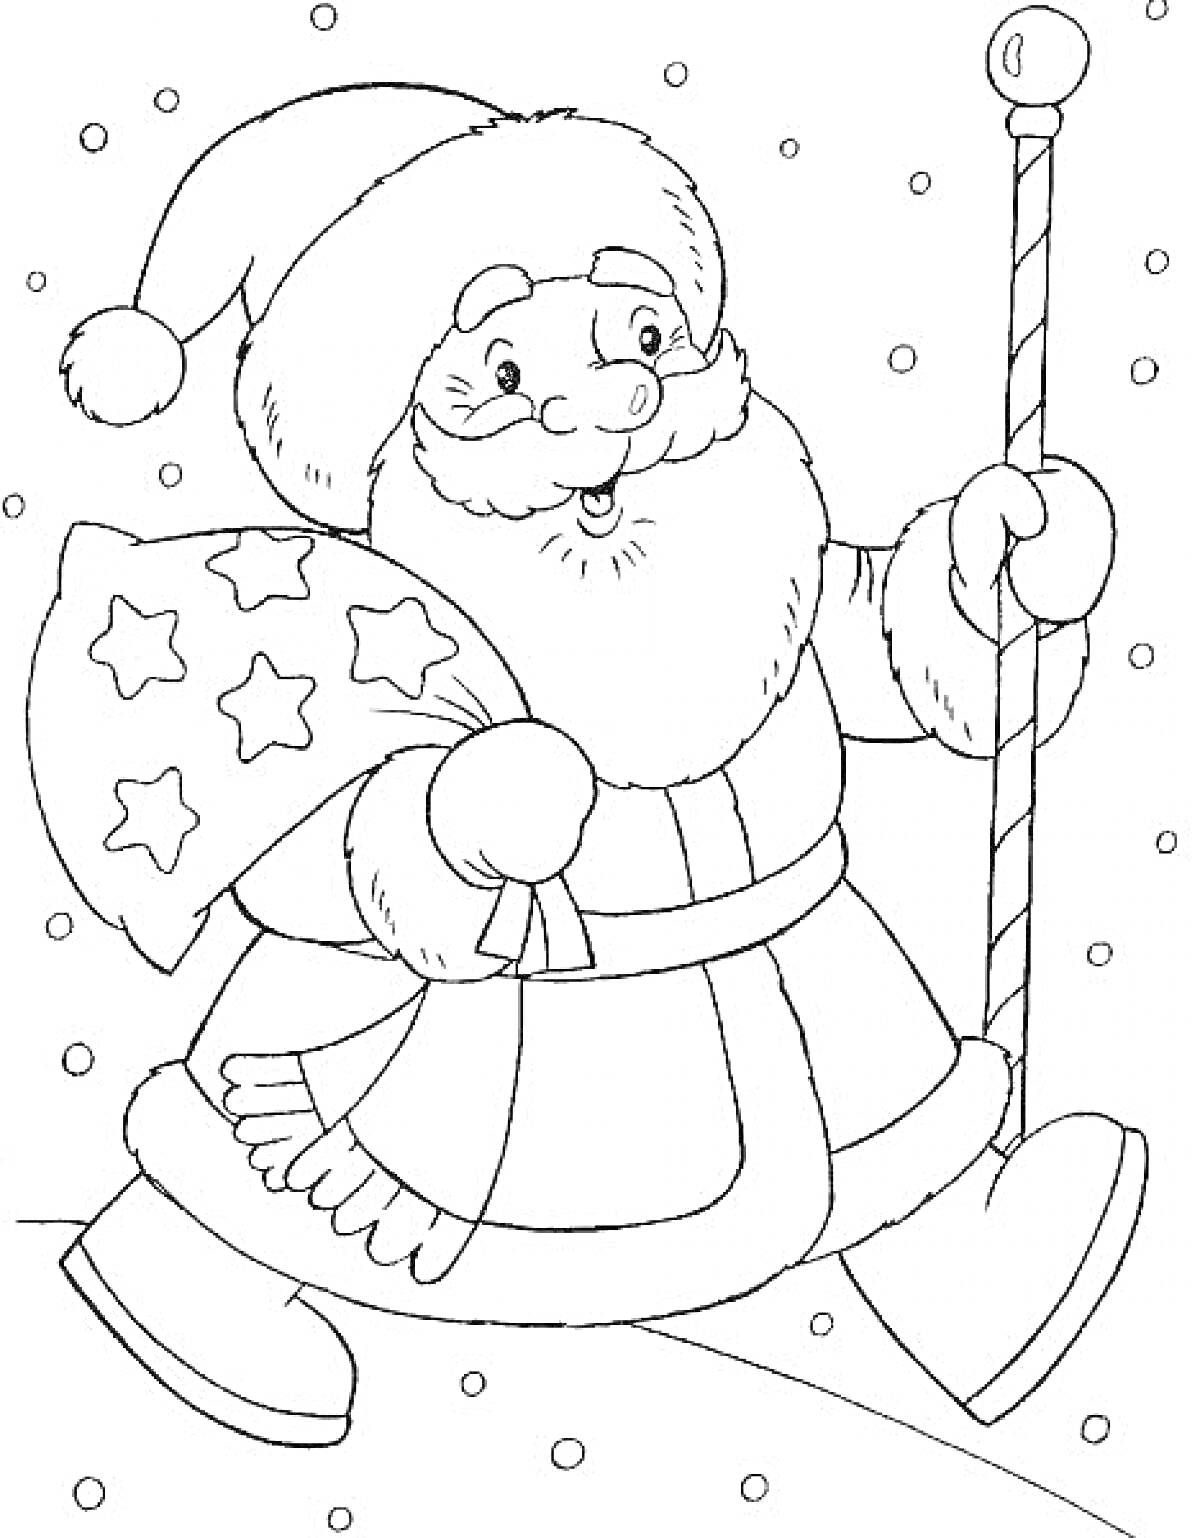 Раскраска Дед Мороз с мешком подарков и посохом, идущий по снегу